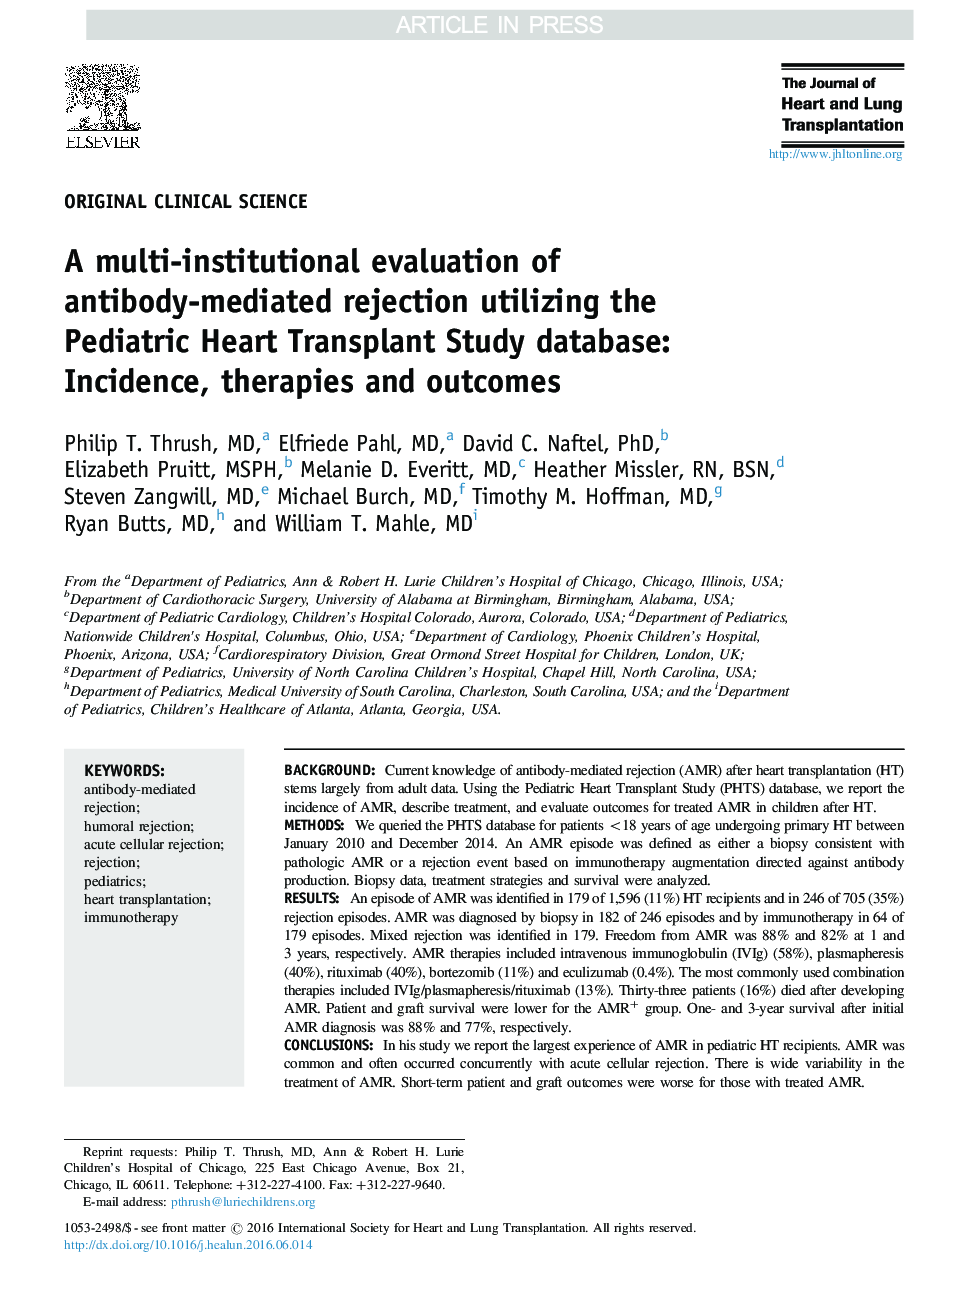 ارزیابی چندین موسسه از رد شدن توسط آنتی بادی با استفاده از پایگاه داده مطالعات پیوند قلب اطفال: بروز، درمان و نتایج 